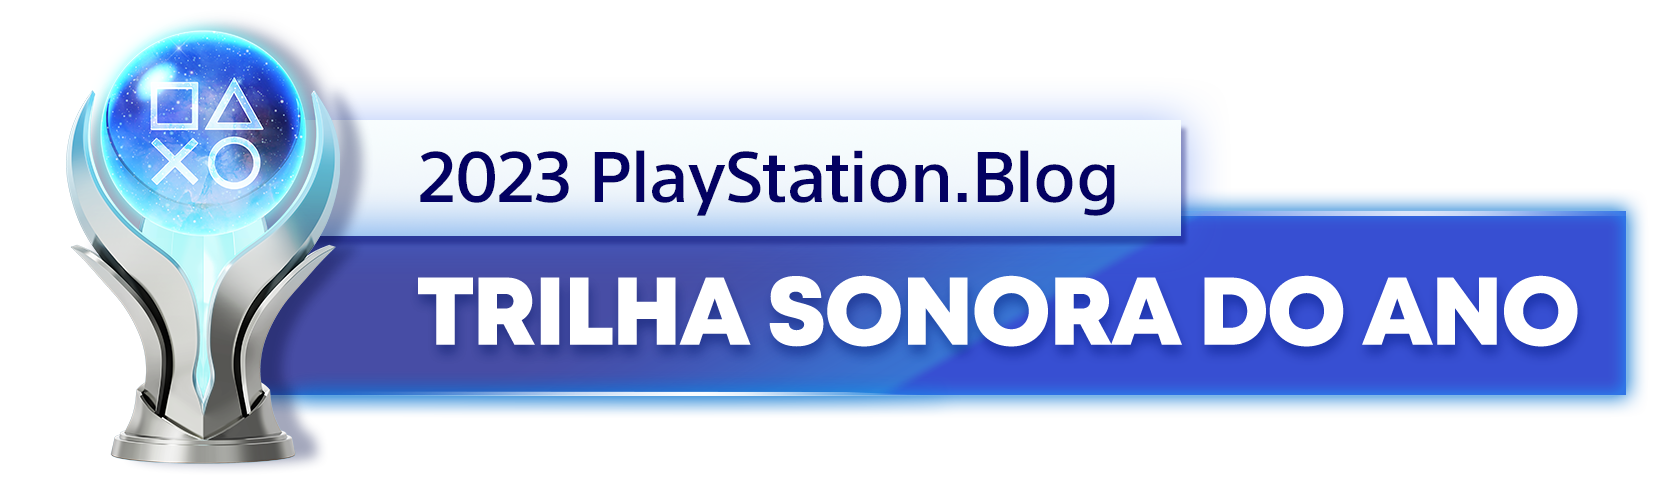  "Troféu de Platina para o vencedor da categoria Trilha Sonora do Ano de 2023 do PlayStation Blog "